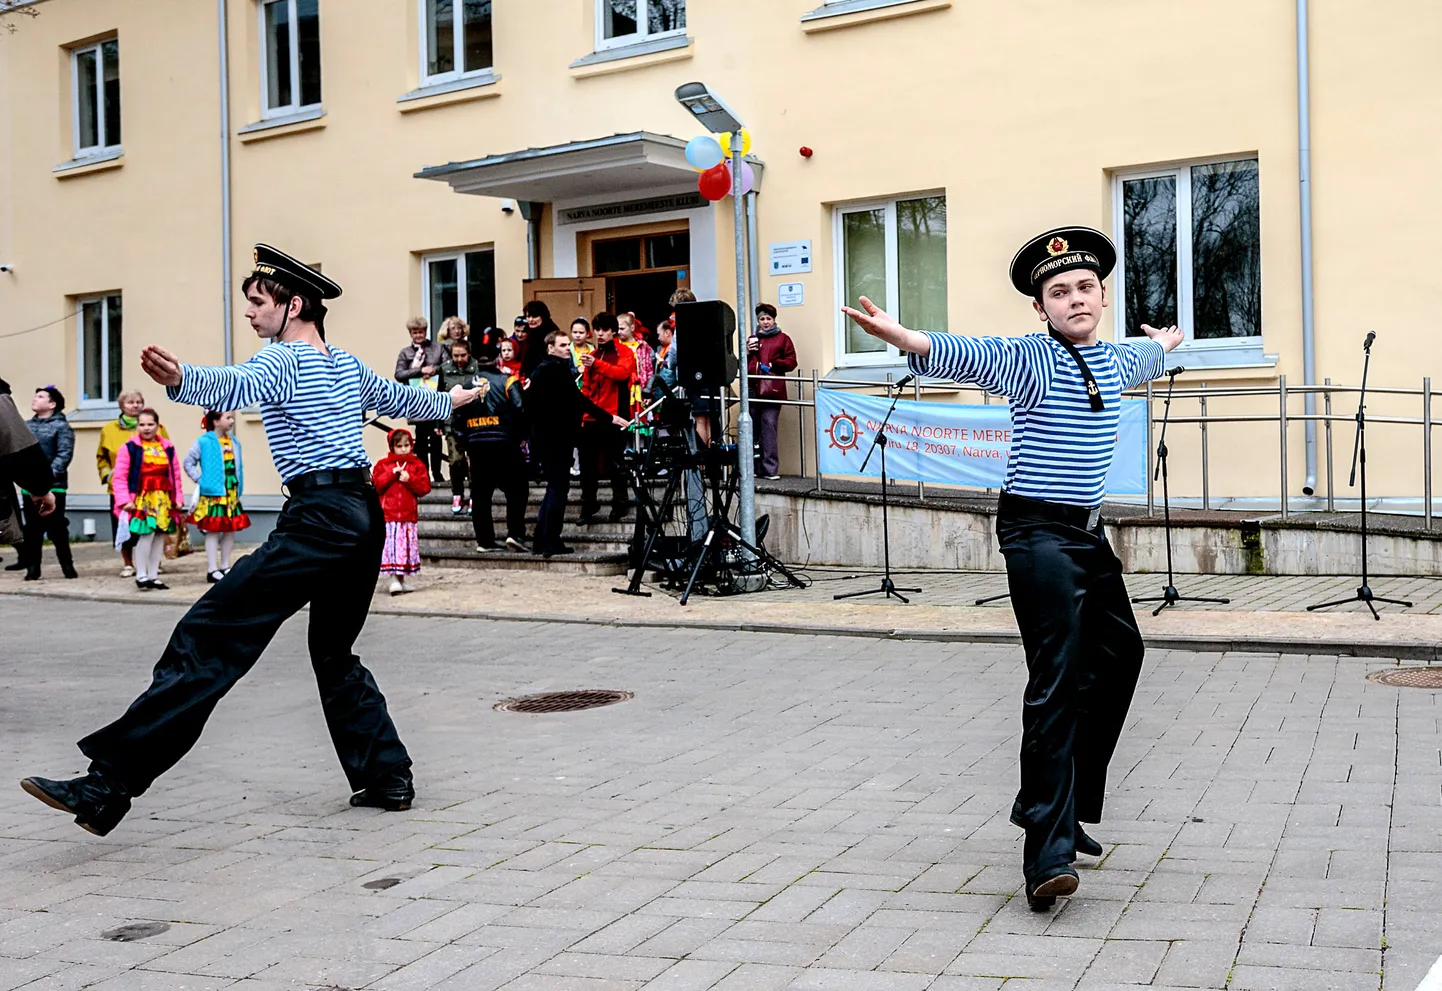 2018. aastal Narva noorte meremeeste klubi hoovis toimunud pidu.